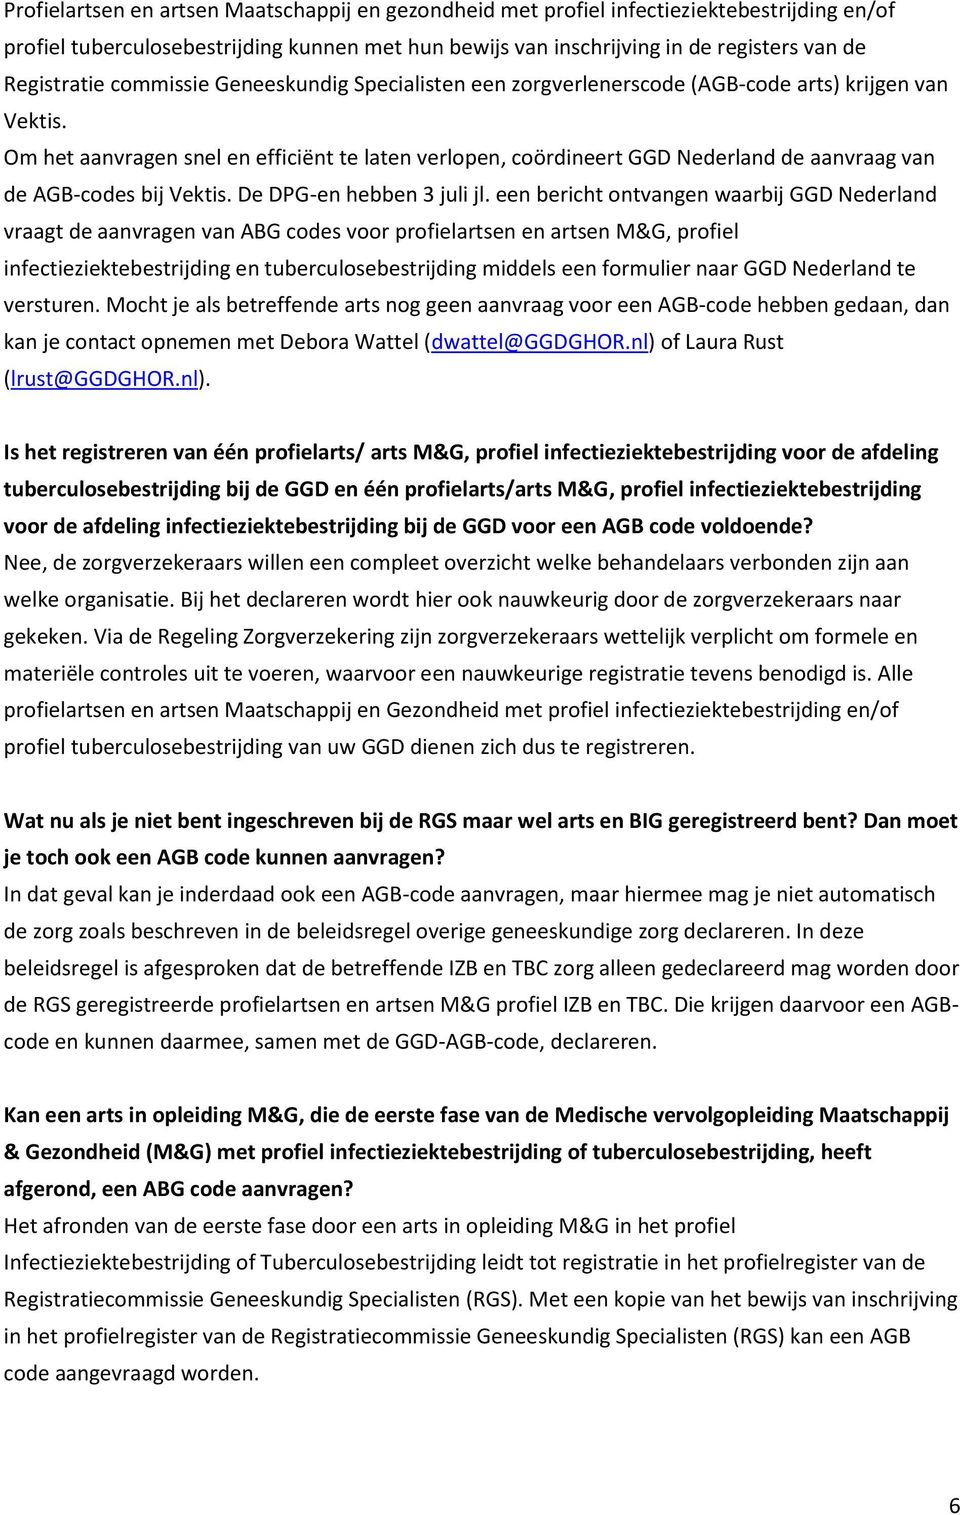 Om het aanvragen snel en efficiënt te laten verlopen, coördineert GGD Nederland de aanvraag van de AGB-codes bij Vektis. De DPG-en hebben 3 juli jl.